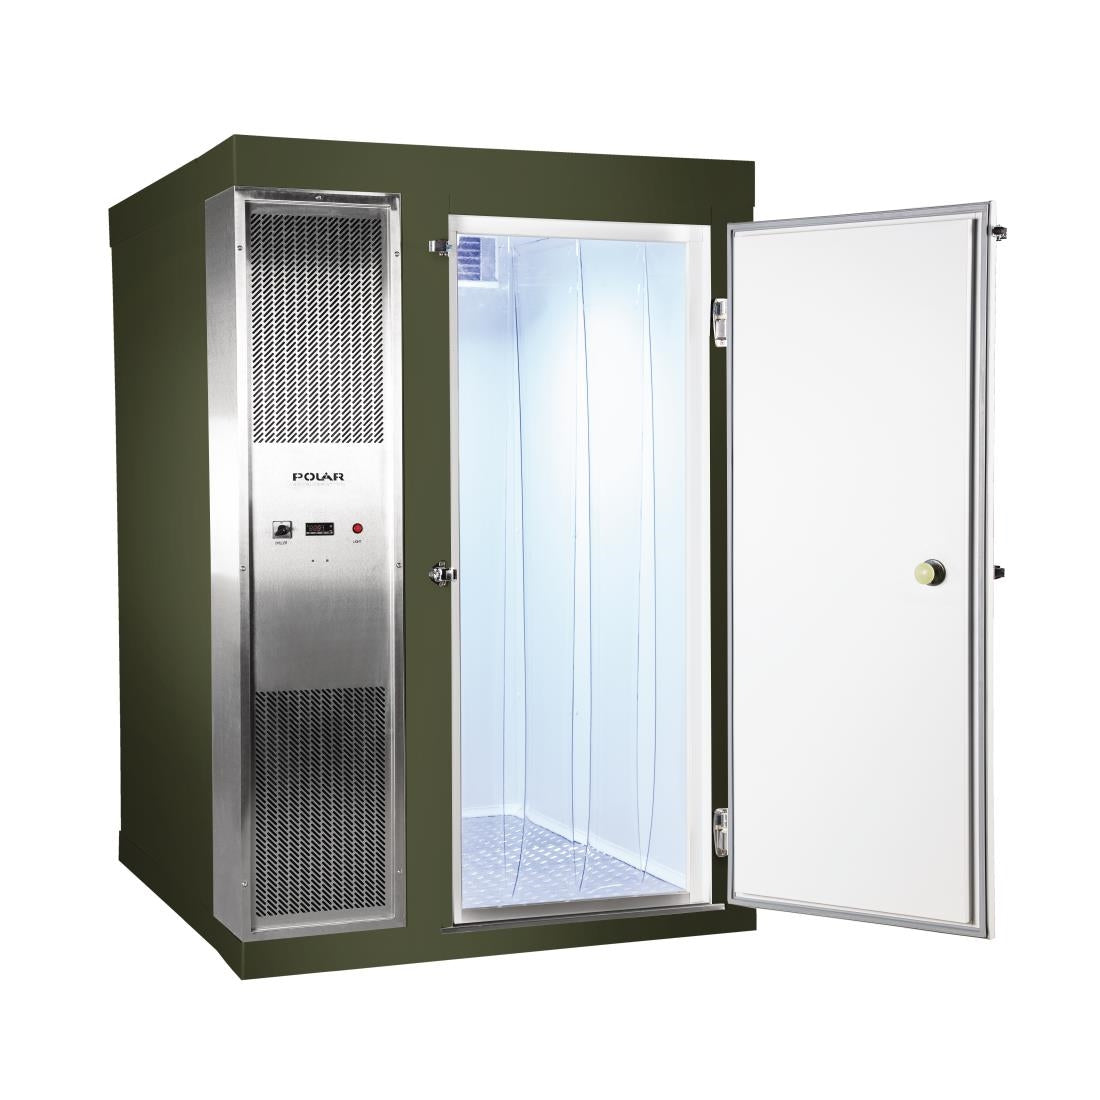 DS485-FGN Polar U-Series 1.8 x 1.8m Integral Walk In Freezer Room Green JD Catering Equipment Solutions Ltd